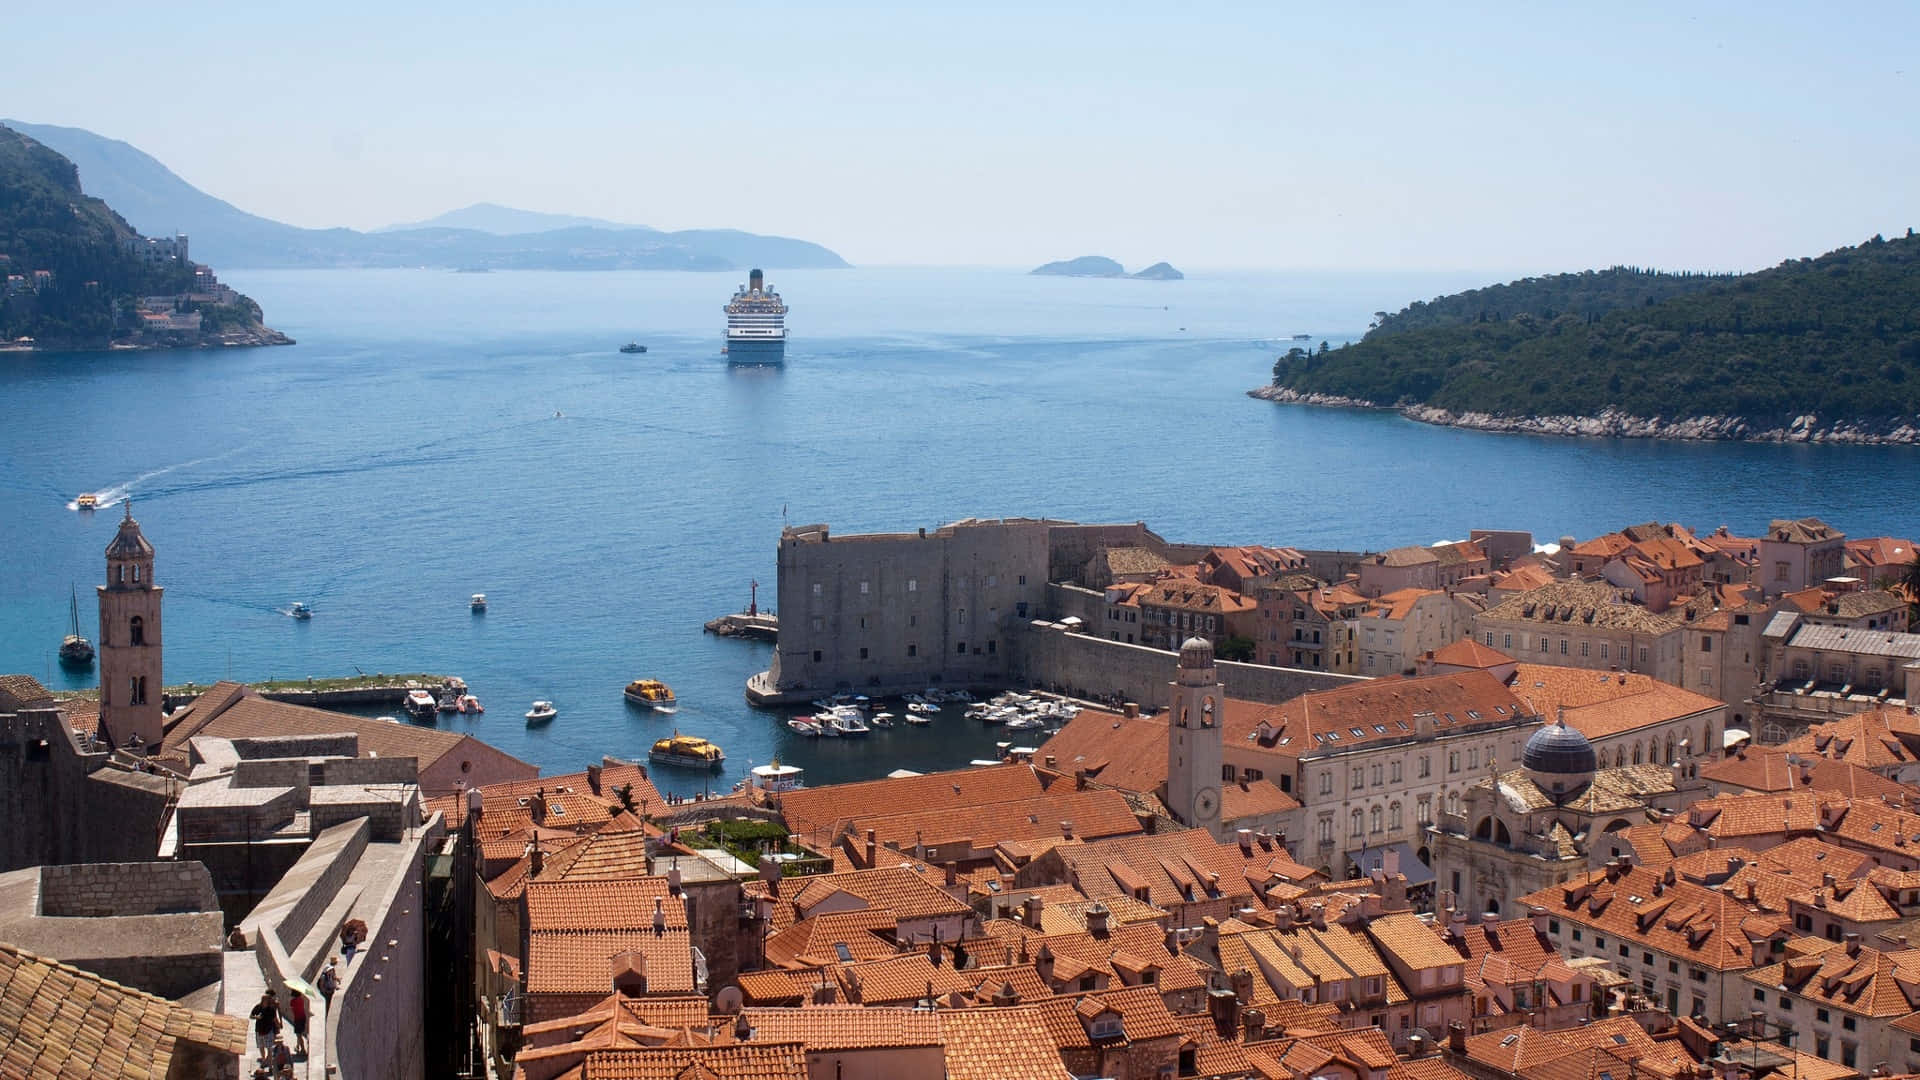 Dubrovnik Cruise Port Är Ett Populärt Val För Bakgrundsbildräkt Till Datorer Eller Mobiler. Wallpaper